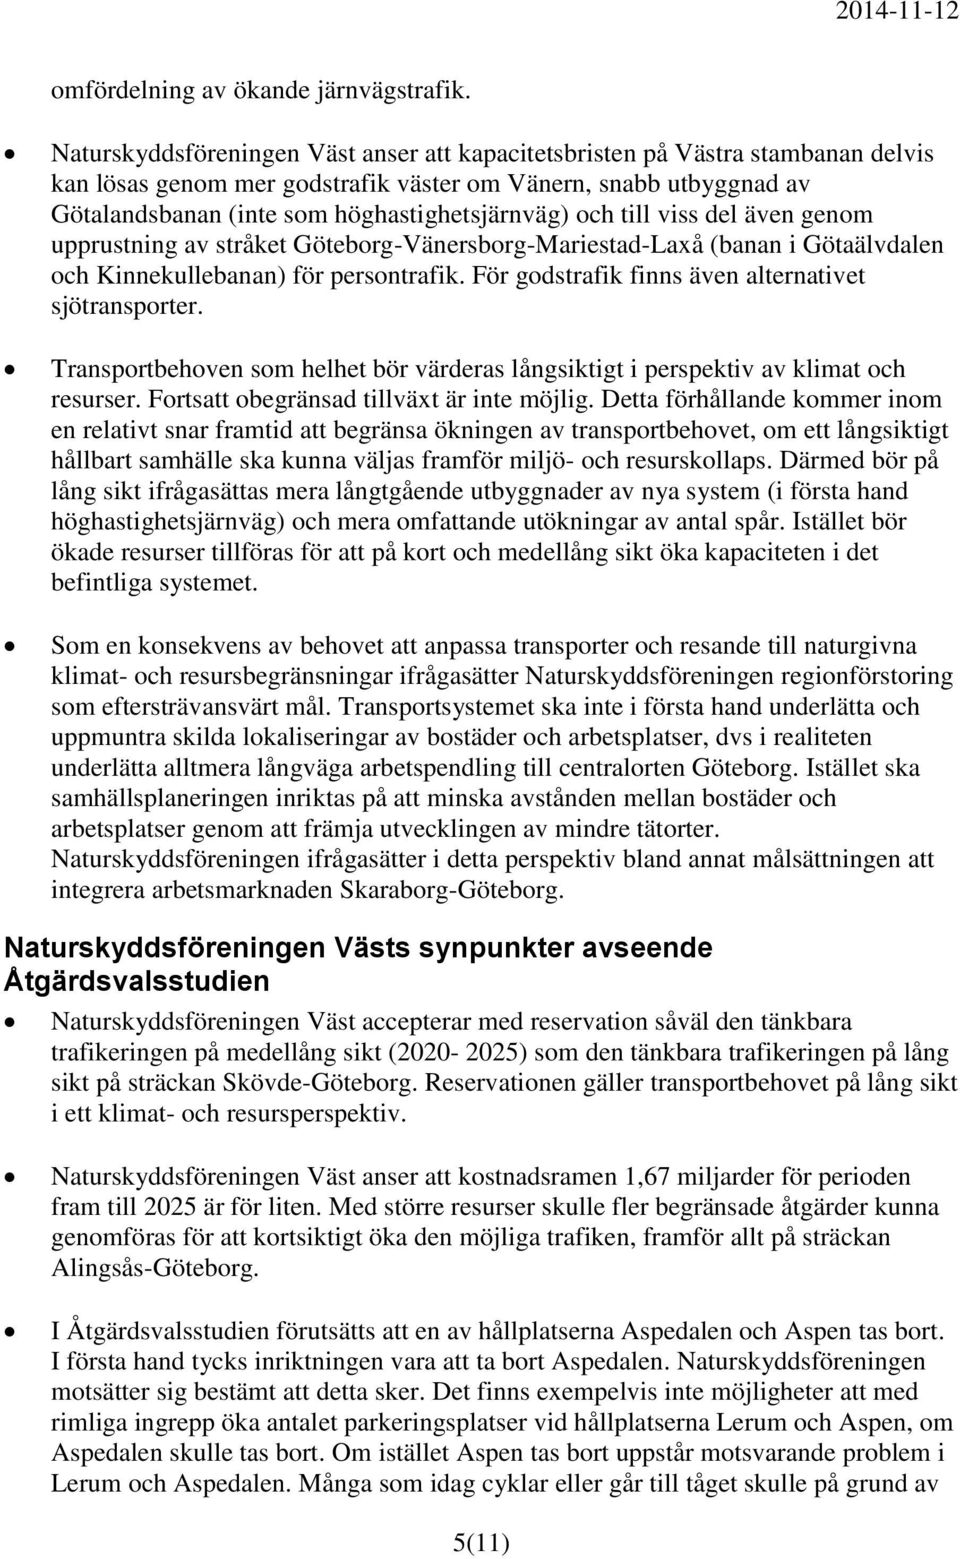 och till viss del även genom upprustning av stråket Göteborg-Vänersborg-Mariestad-Laxå (banan i Götaälvdalen och Kinnekullebanan) för persontrafik.